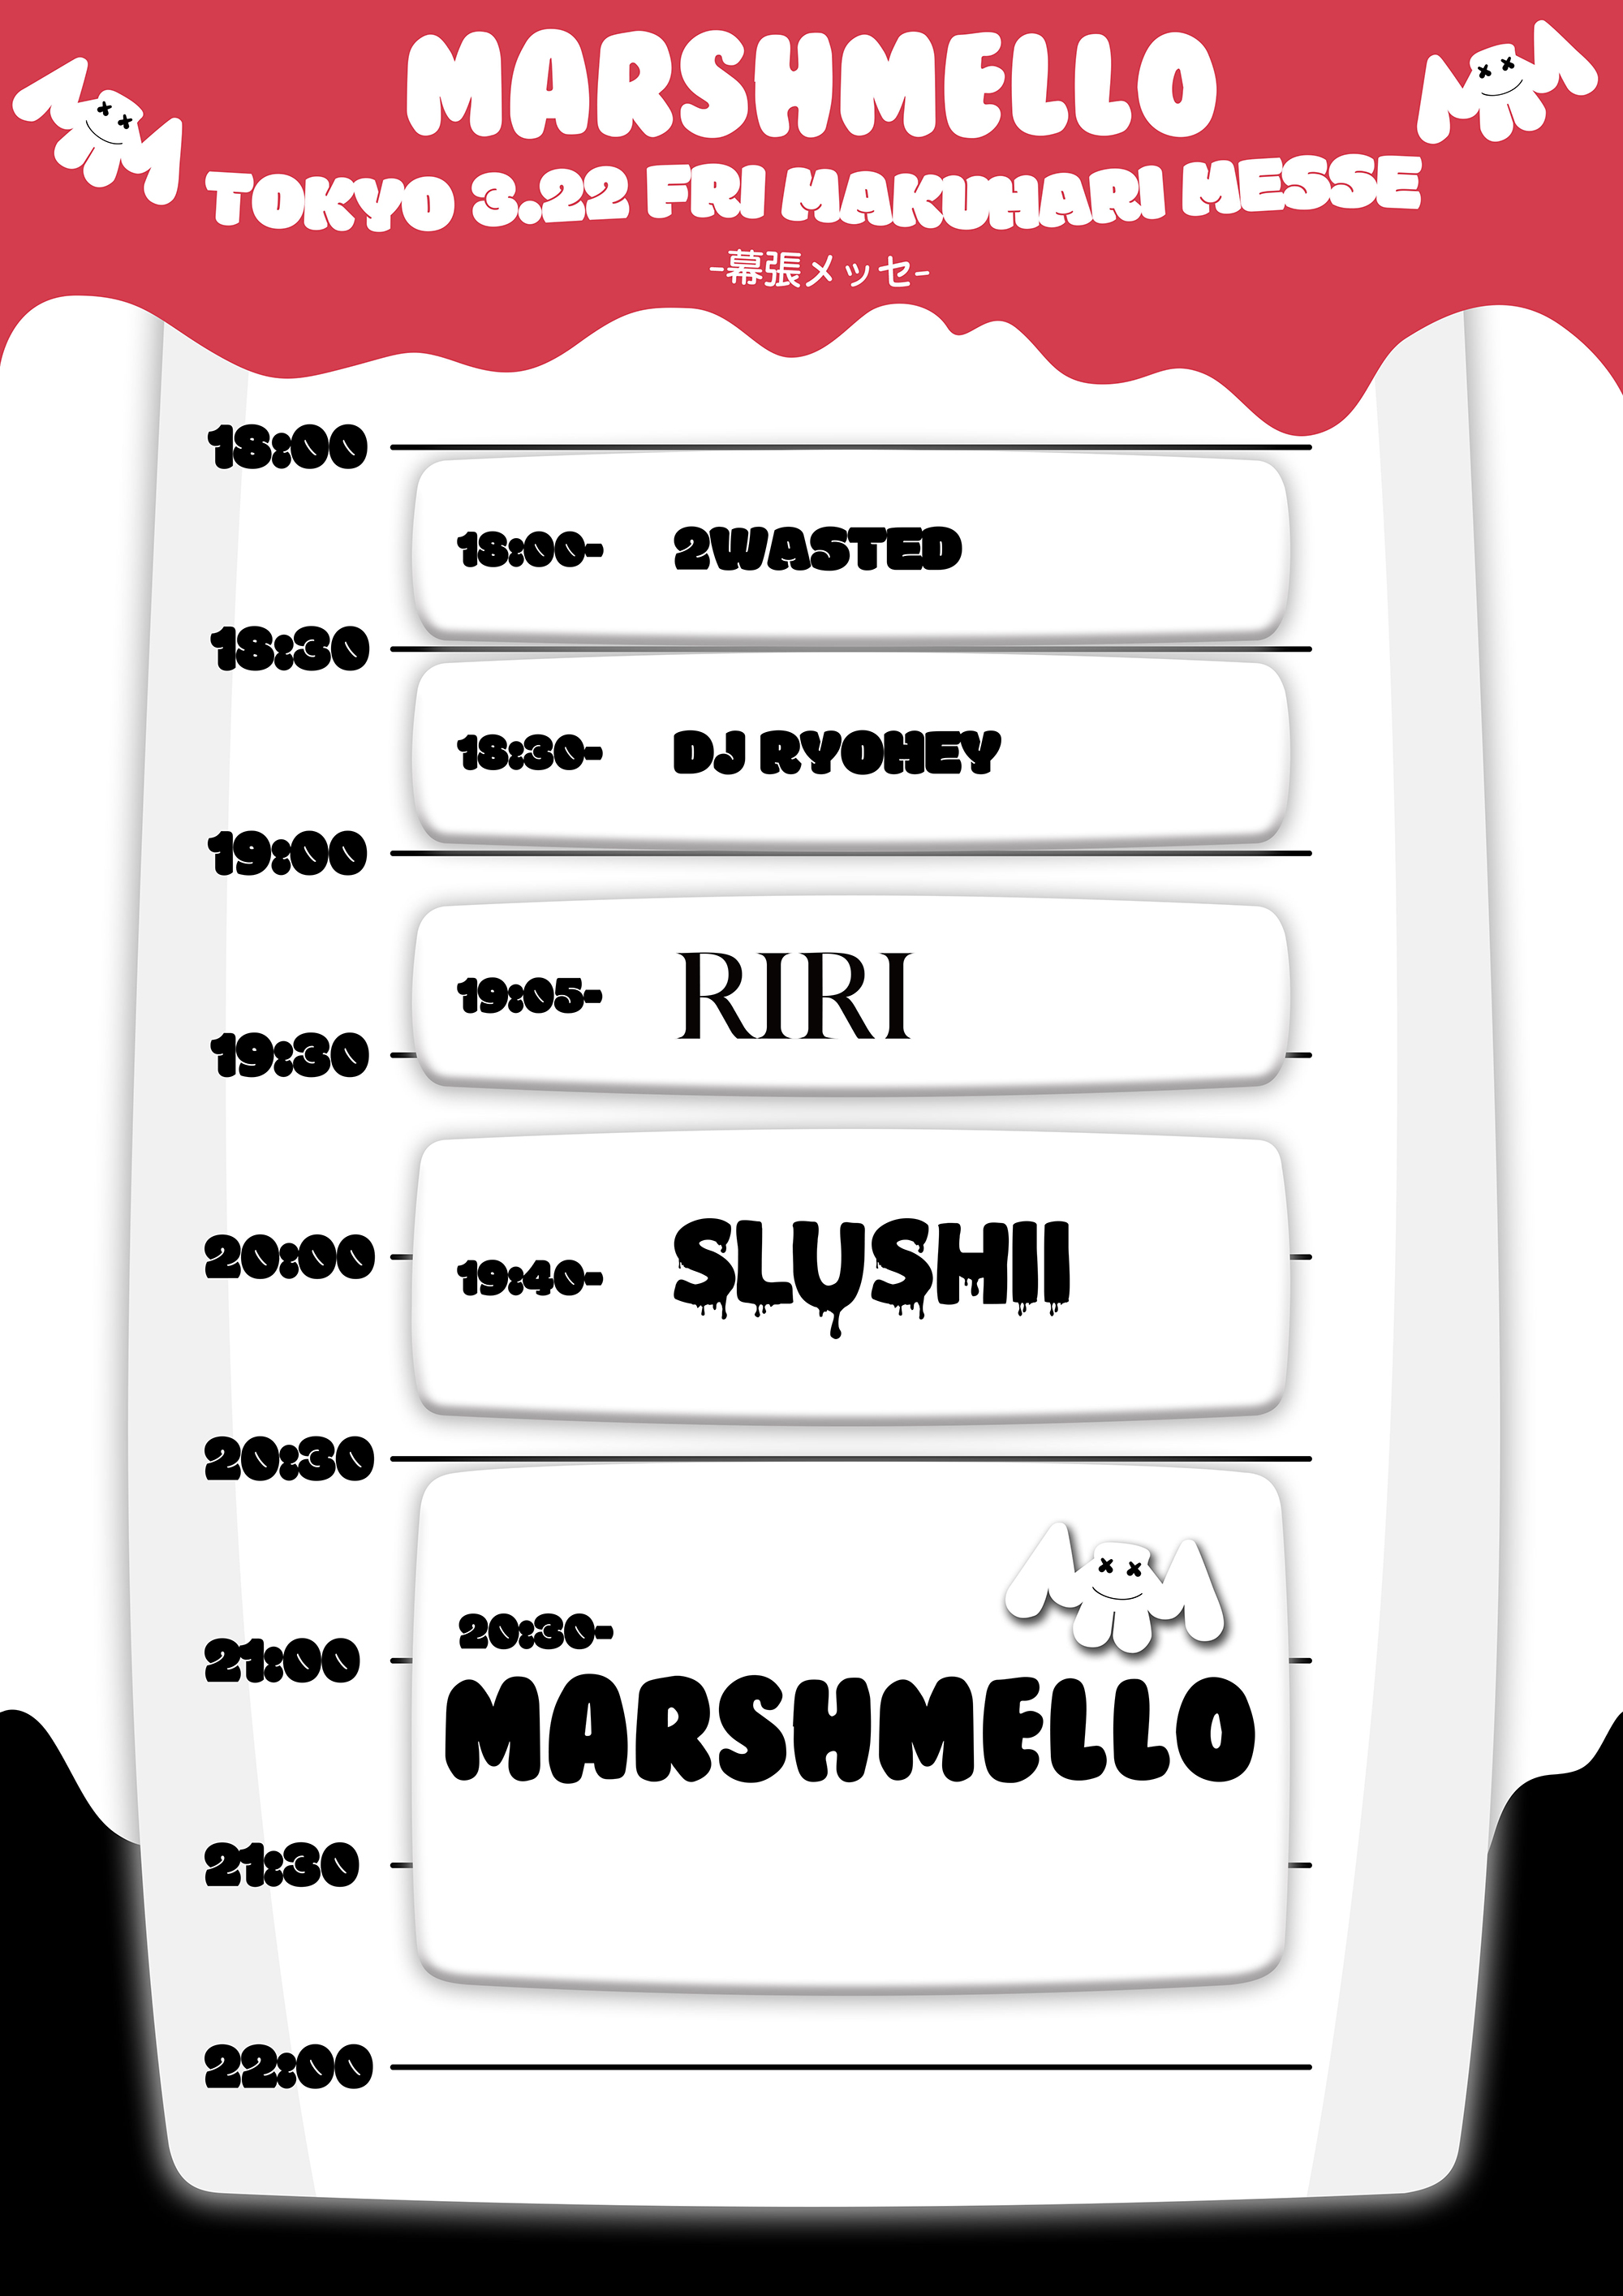 マシュメロ来日公演 Marshmello 初の大型単独来日公演が決定